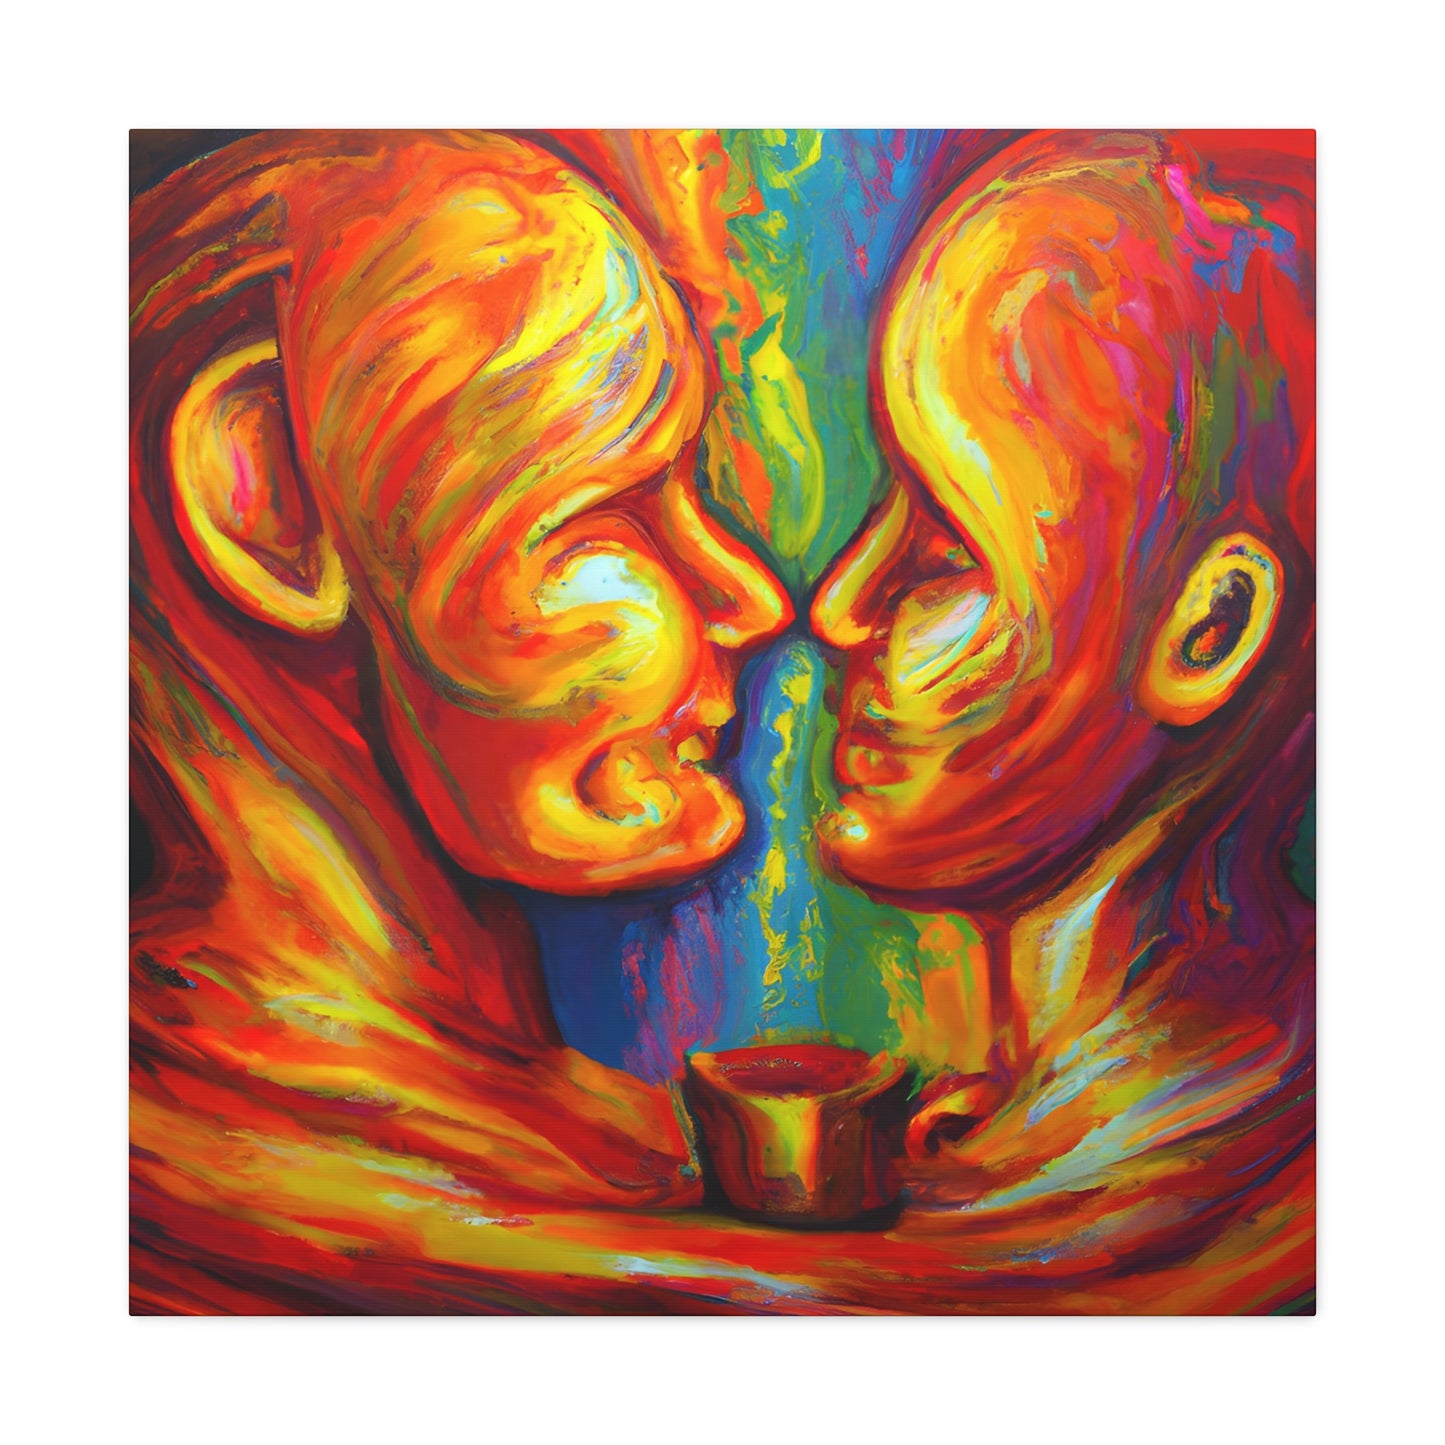 Ace. - Gay Love Canvas Art